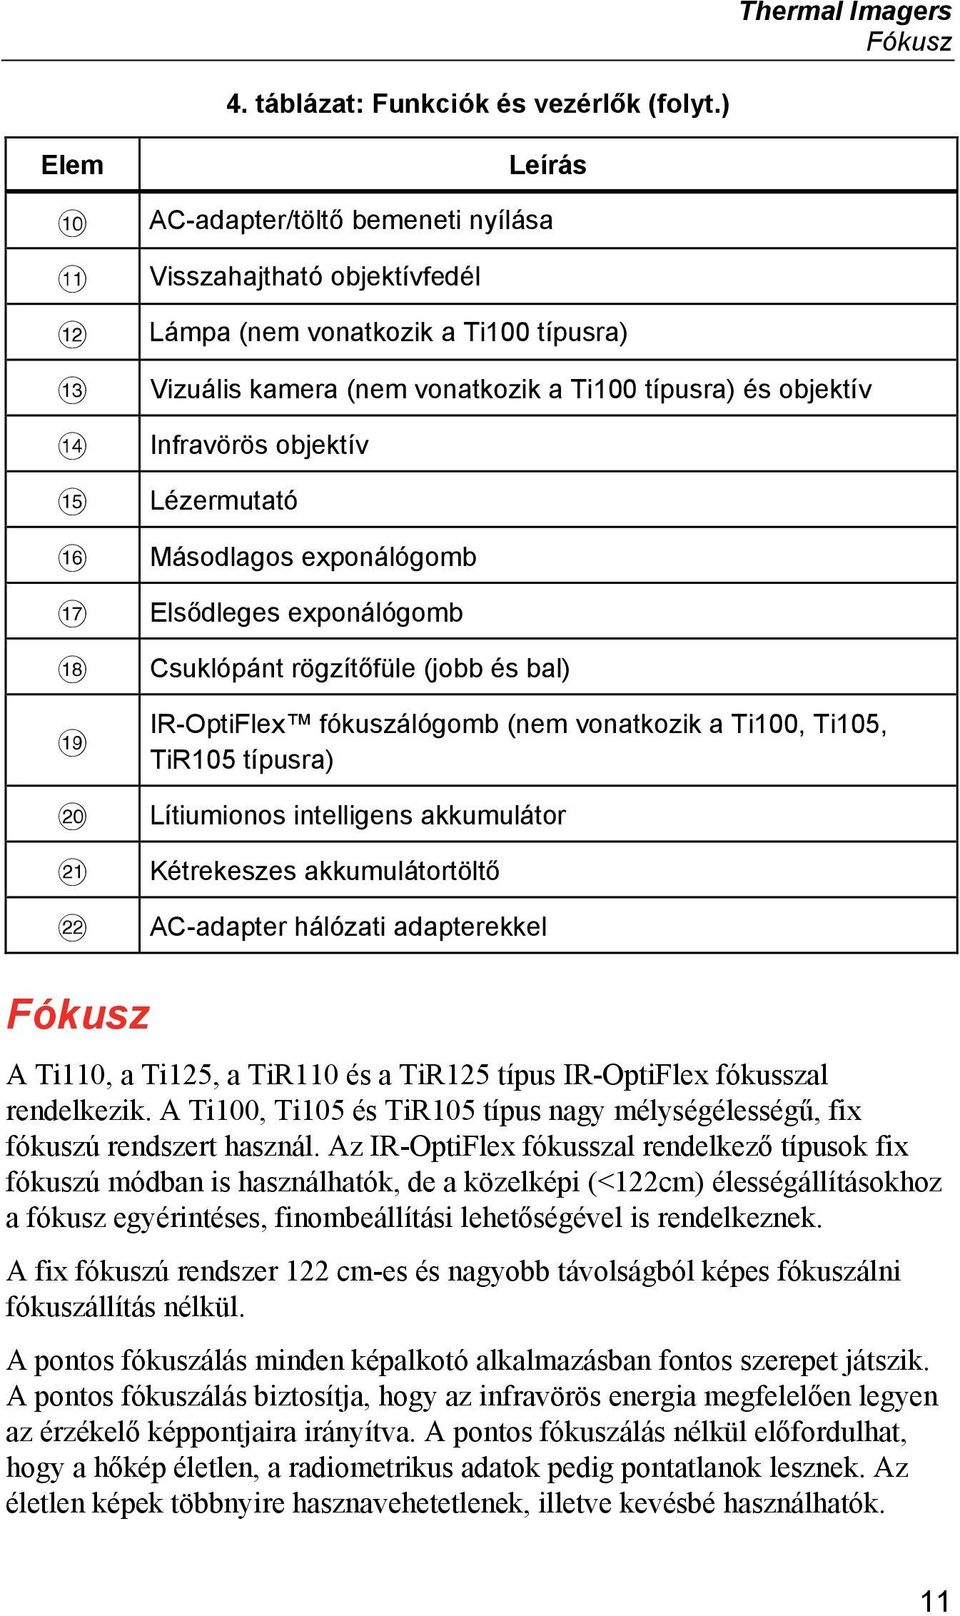 Lézermutató Másodlagos exponálógomb Elsődleges exponálógomb Csuklópánt rögzítőfüle (jobb és bal) IR-OptiFlex fókuszálógomb (nem vonatkozik a Ti100, Ti105, TiR105 típusra) Lítiumionos intelligens